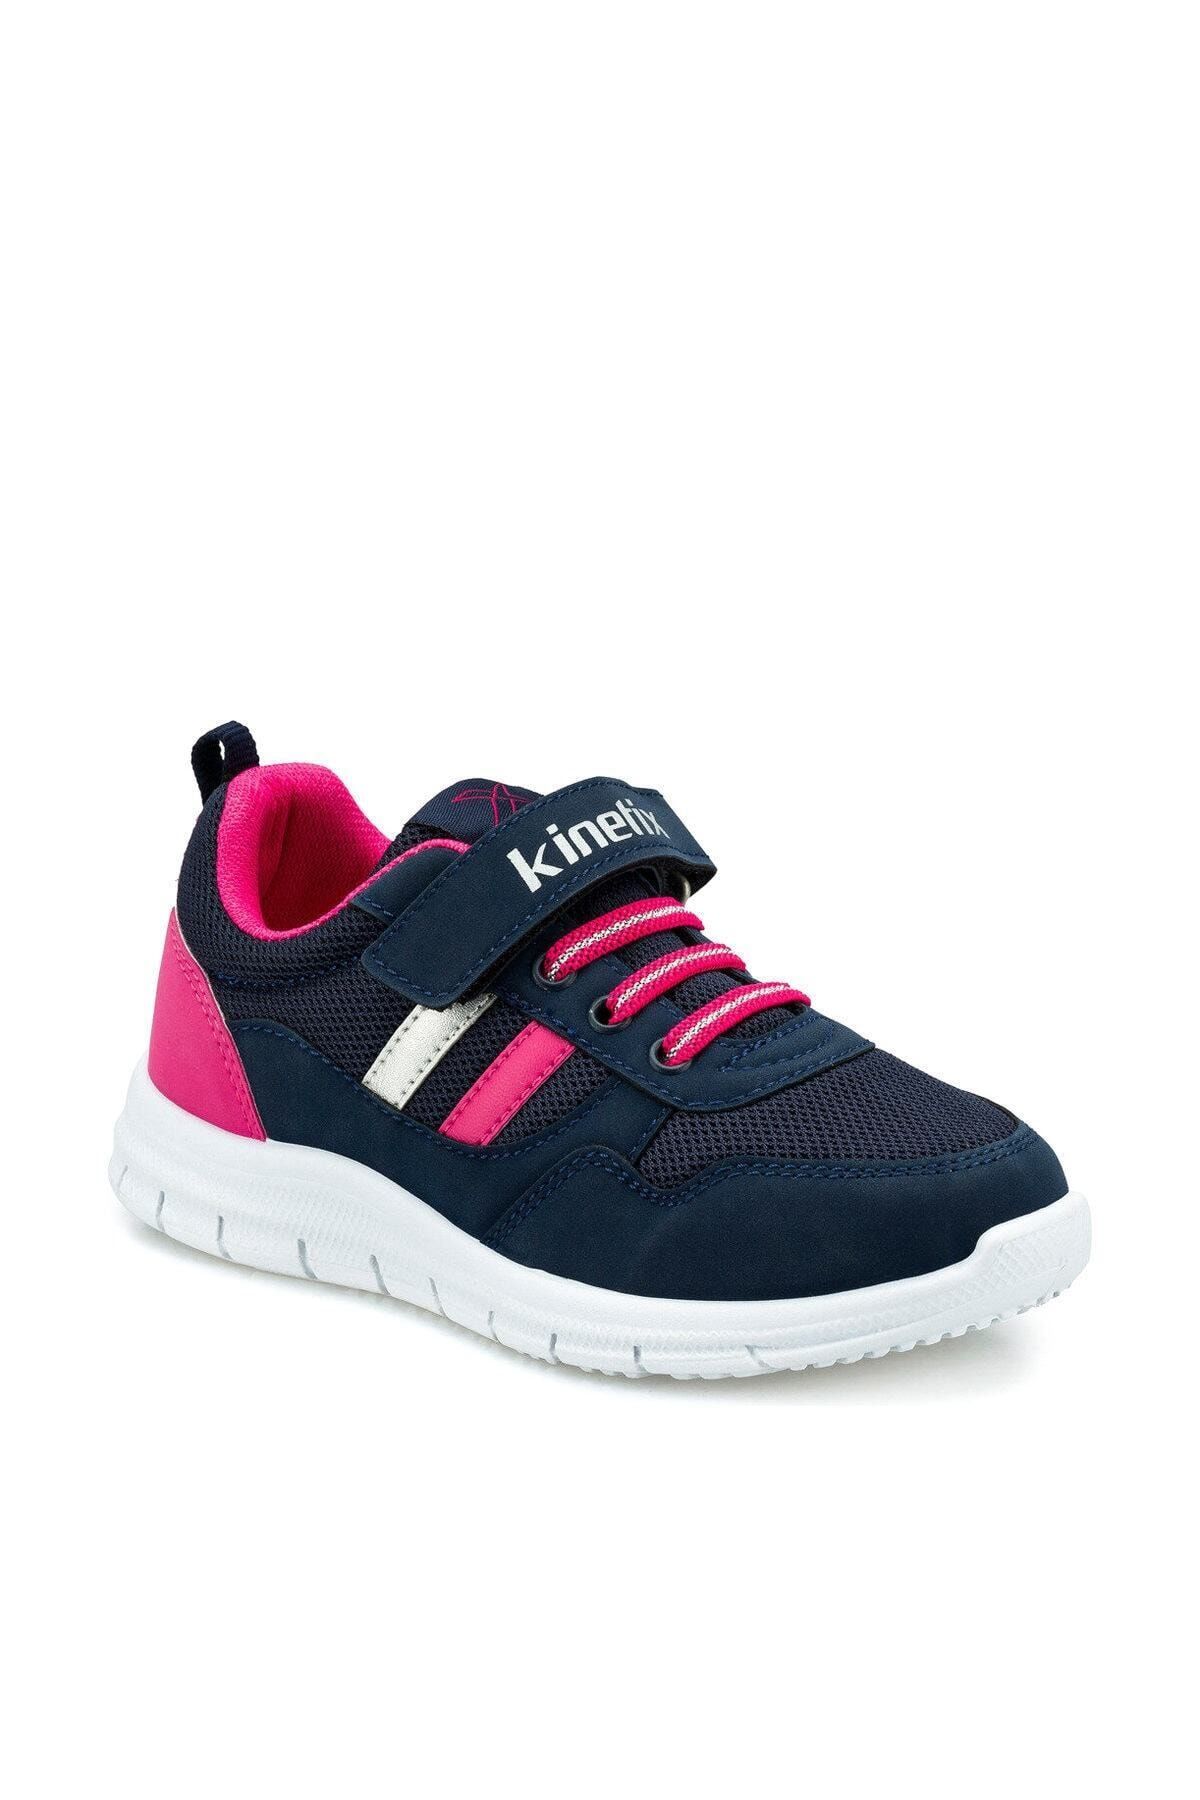 Kinetix SANDER Lacivert Kız Çocuk Yürüyüş Ayakkabısı 100493825